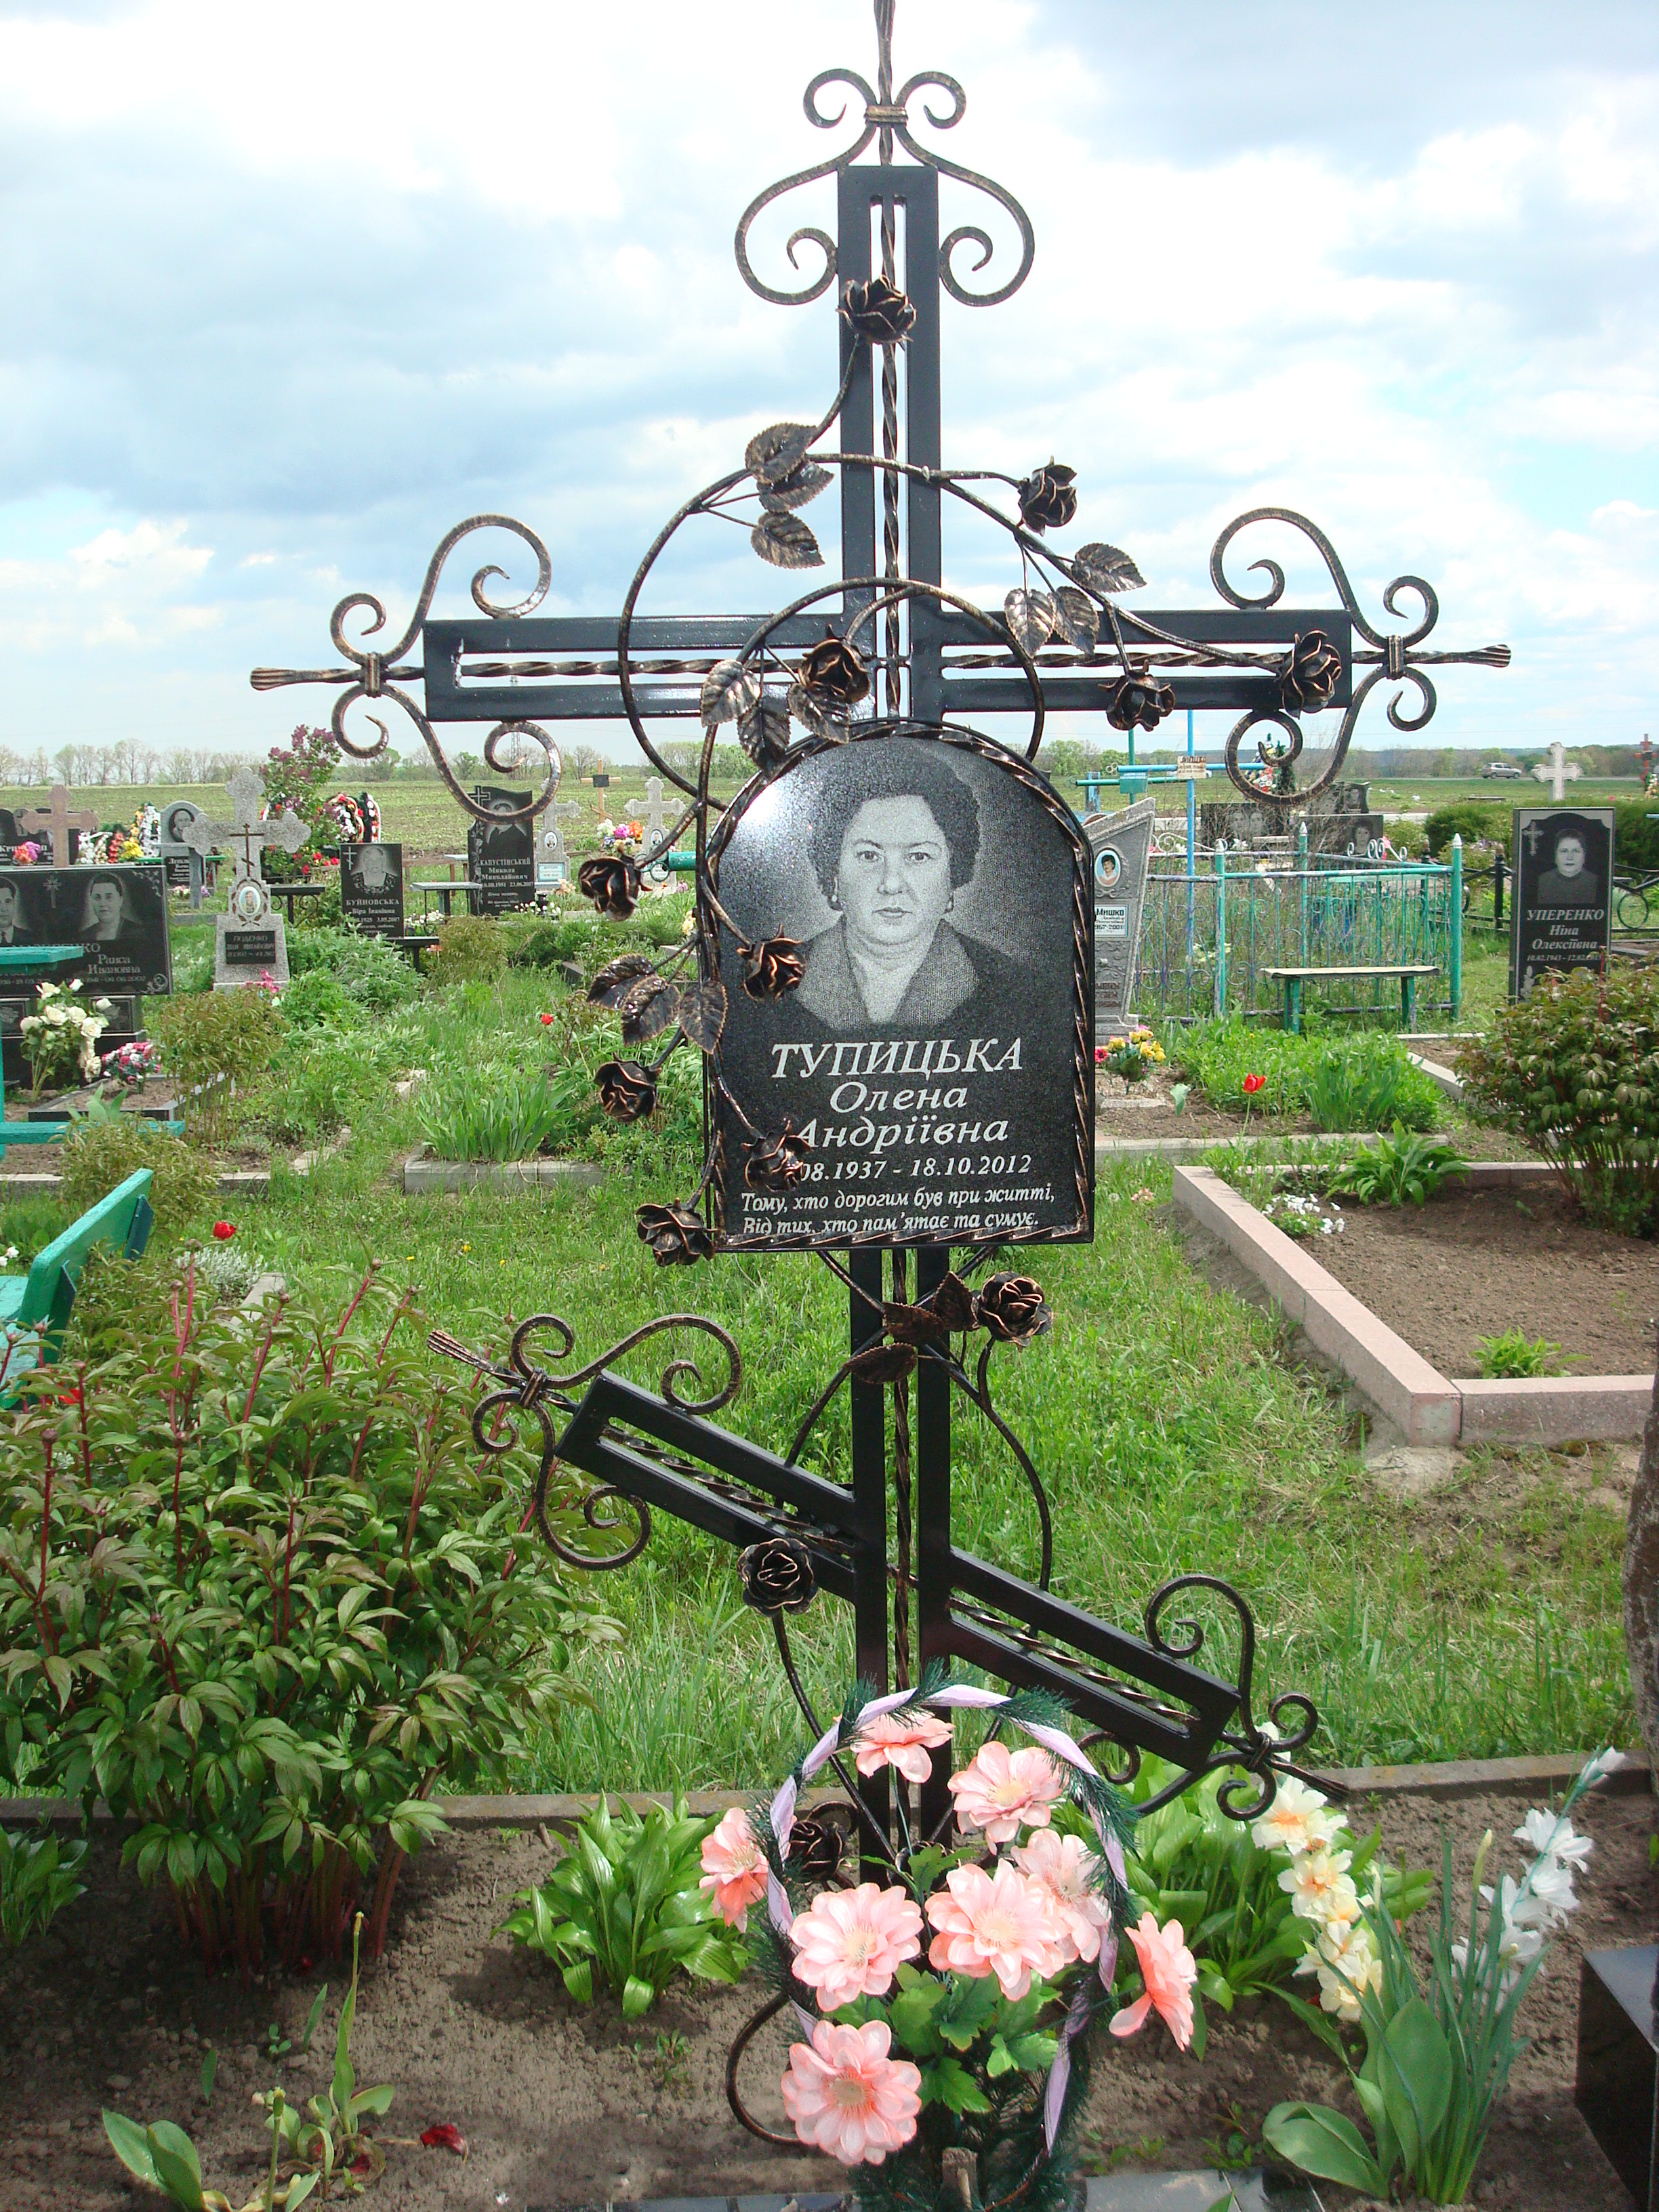 Табличка с фото на кладбище